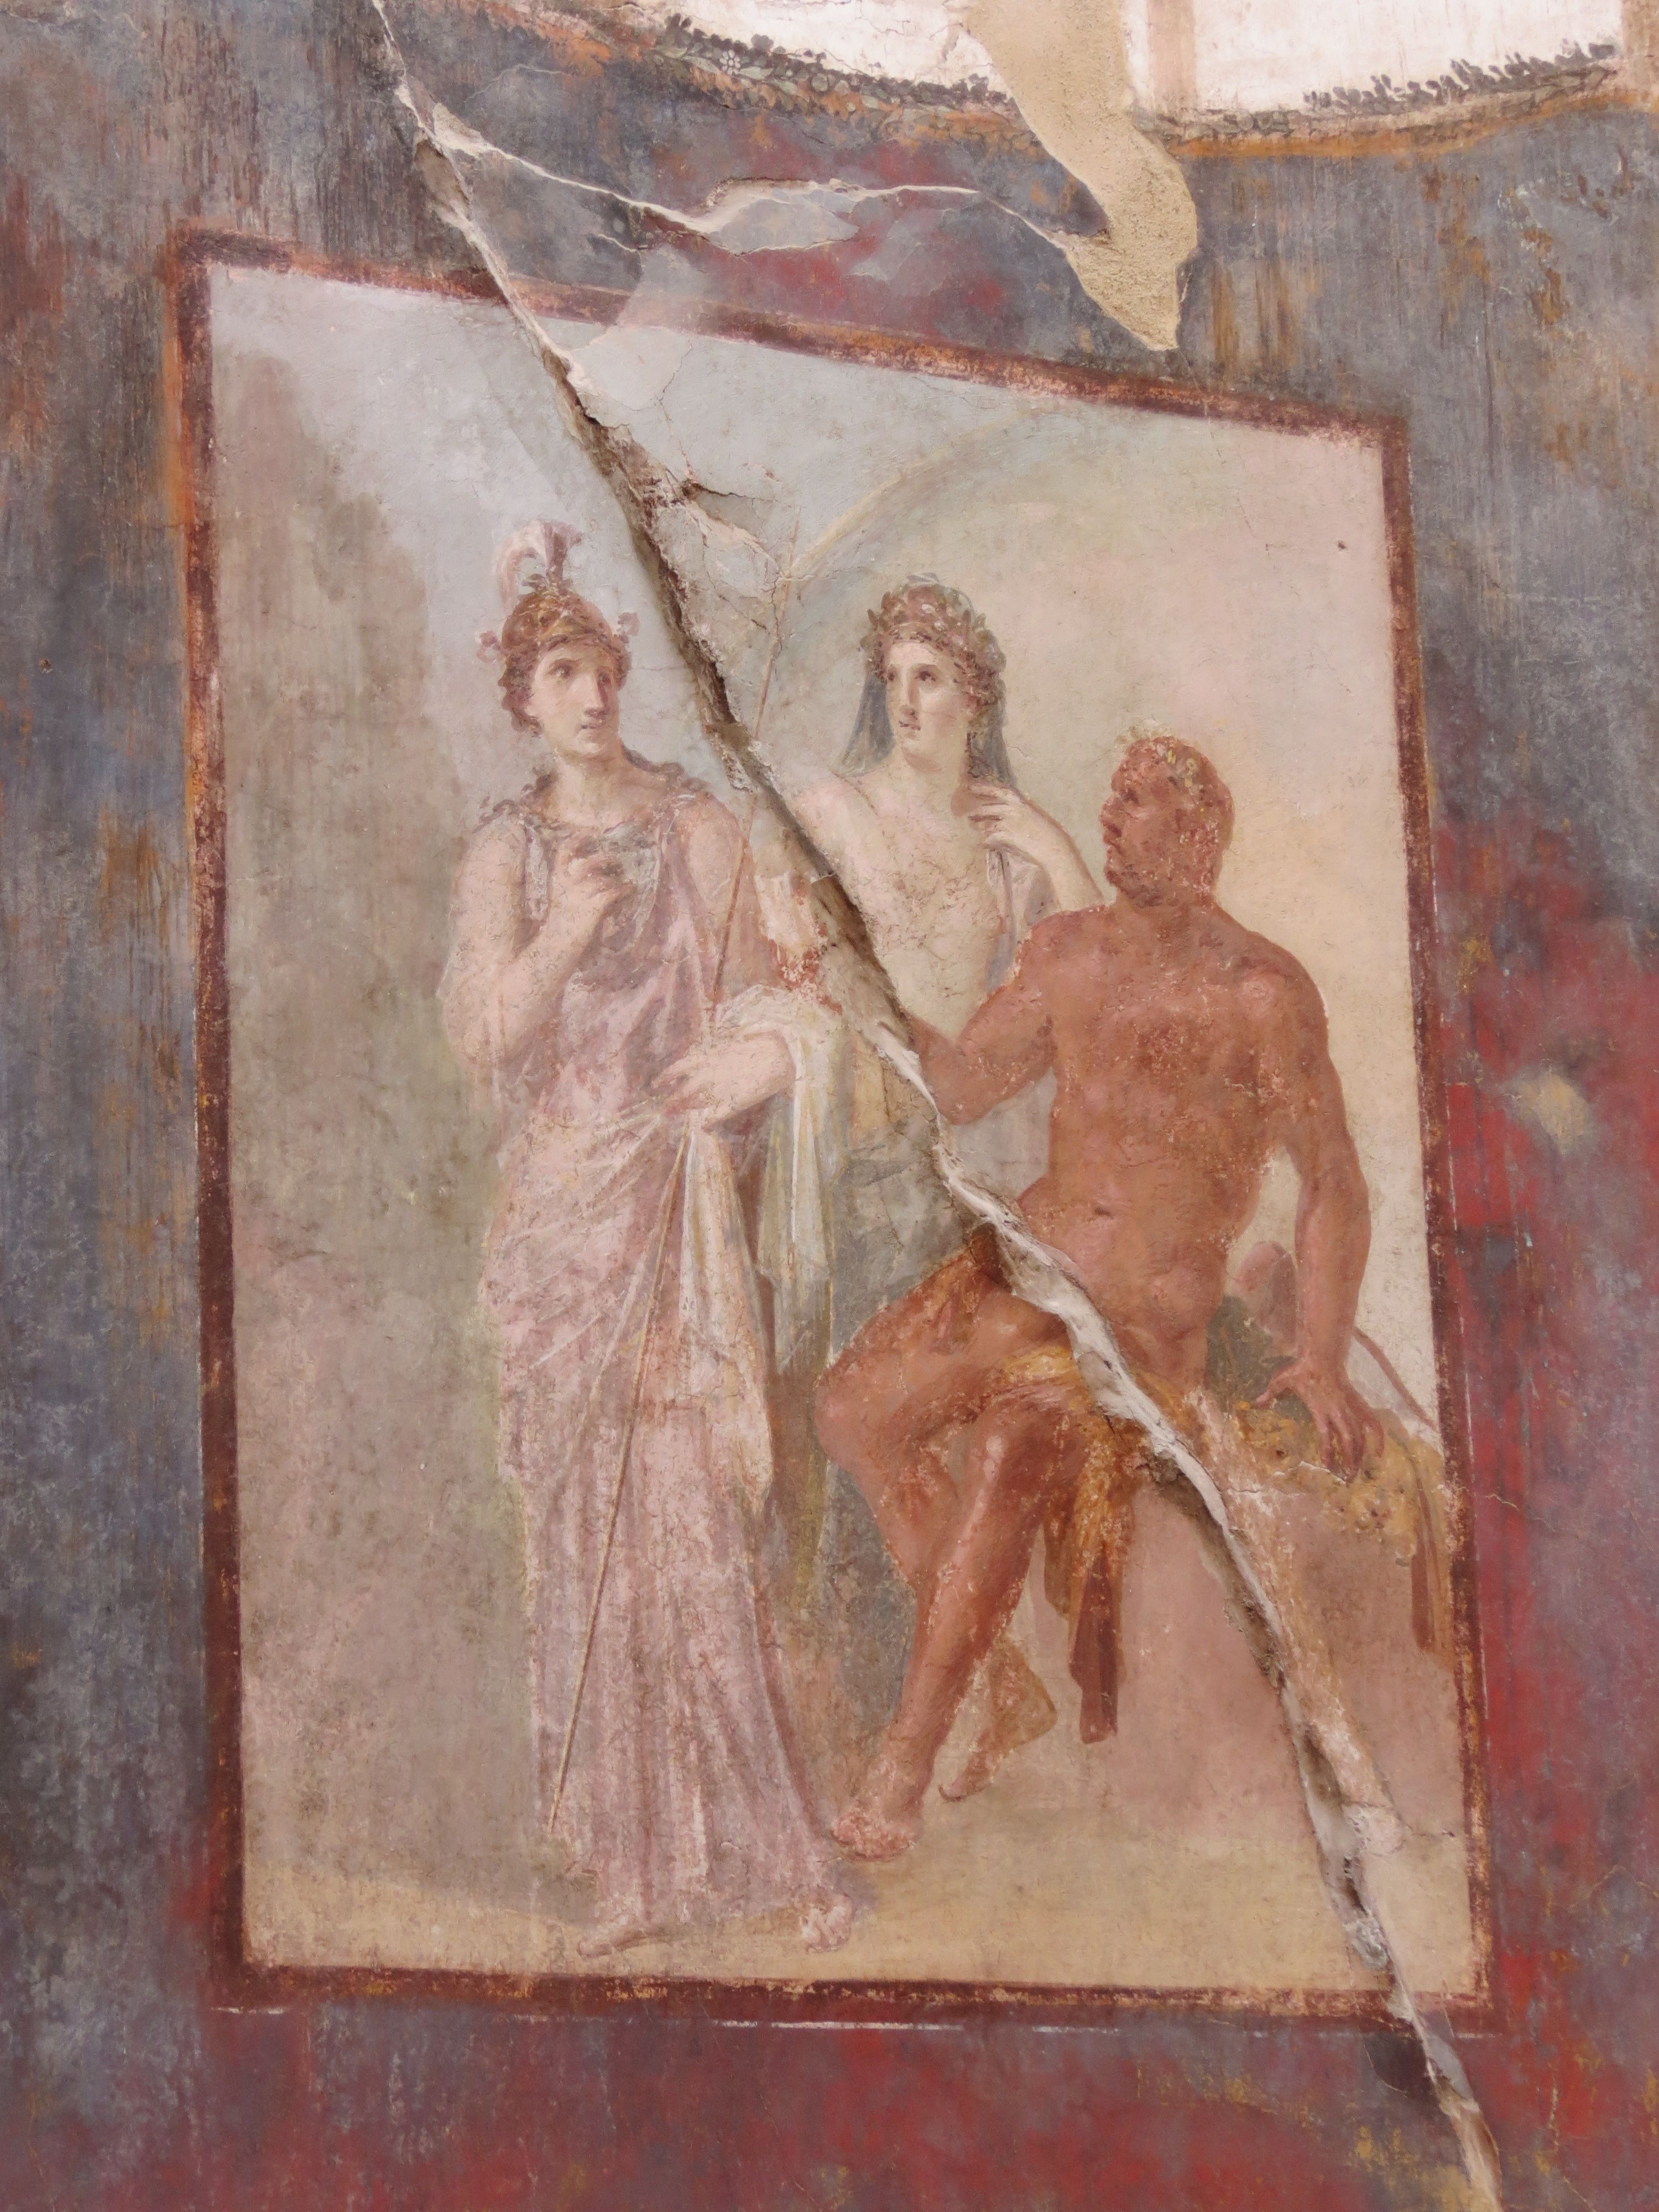 Hercules fresco